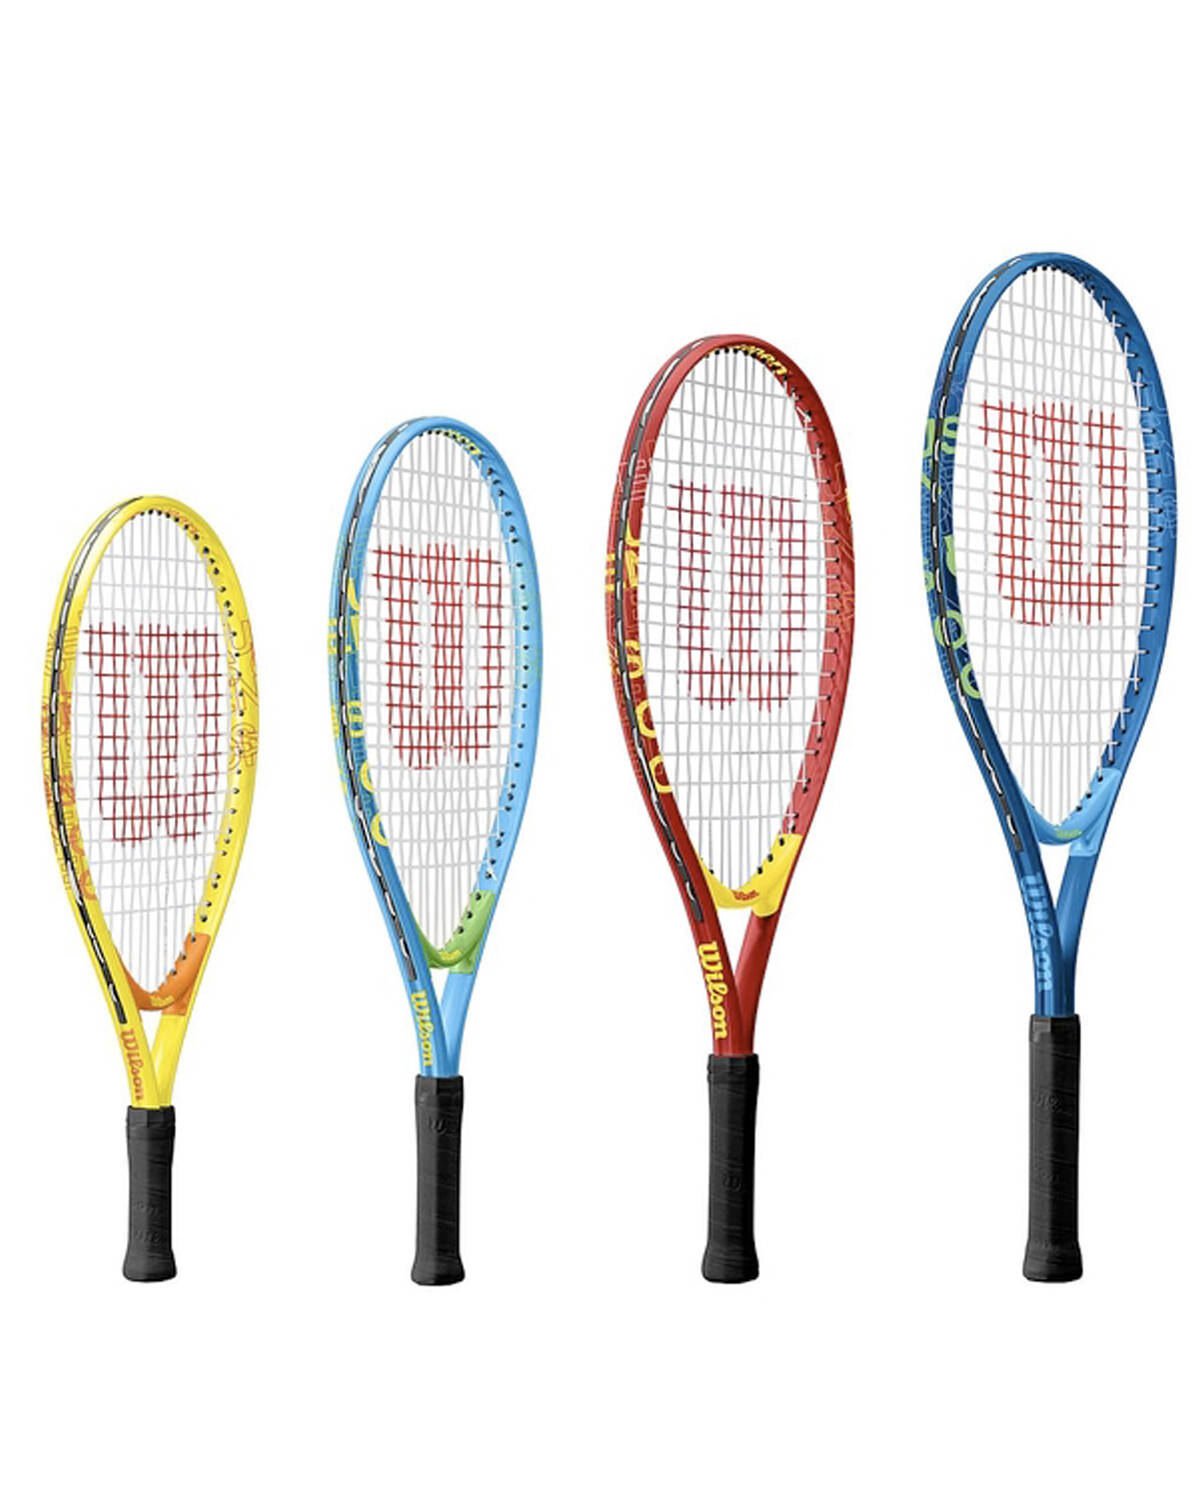 Raqueta Tenis tennis Adulto huijun HJ-R051 fibra carbono bolso funda